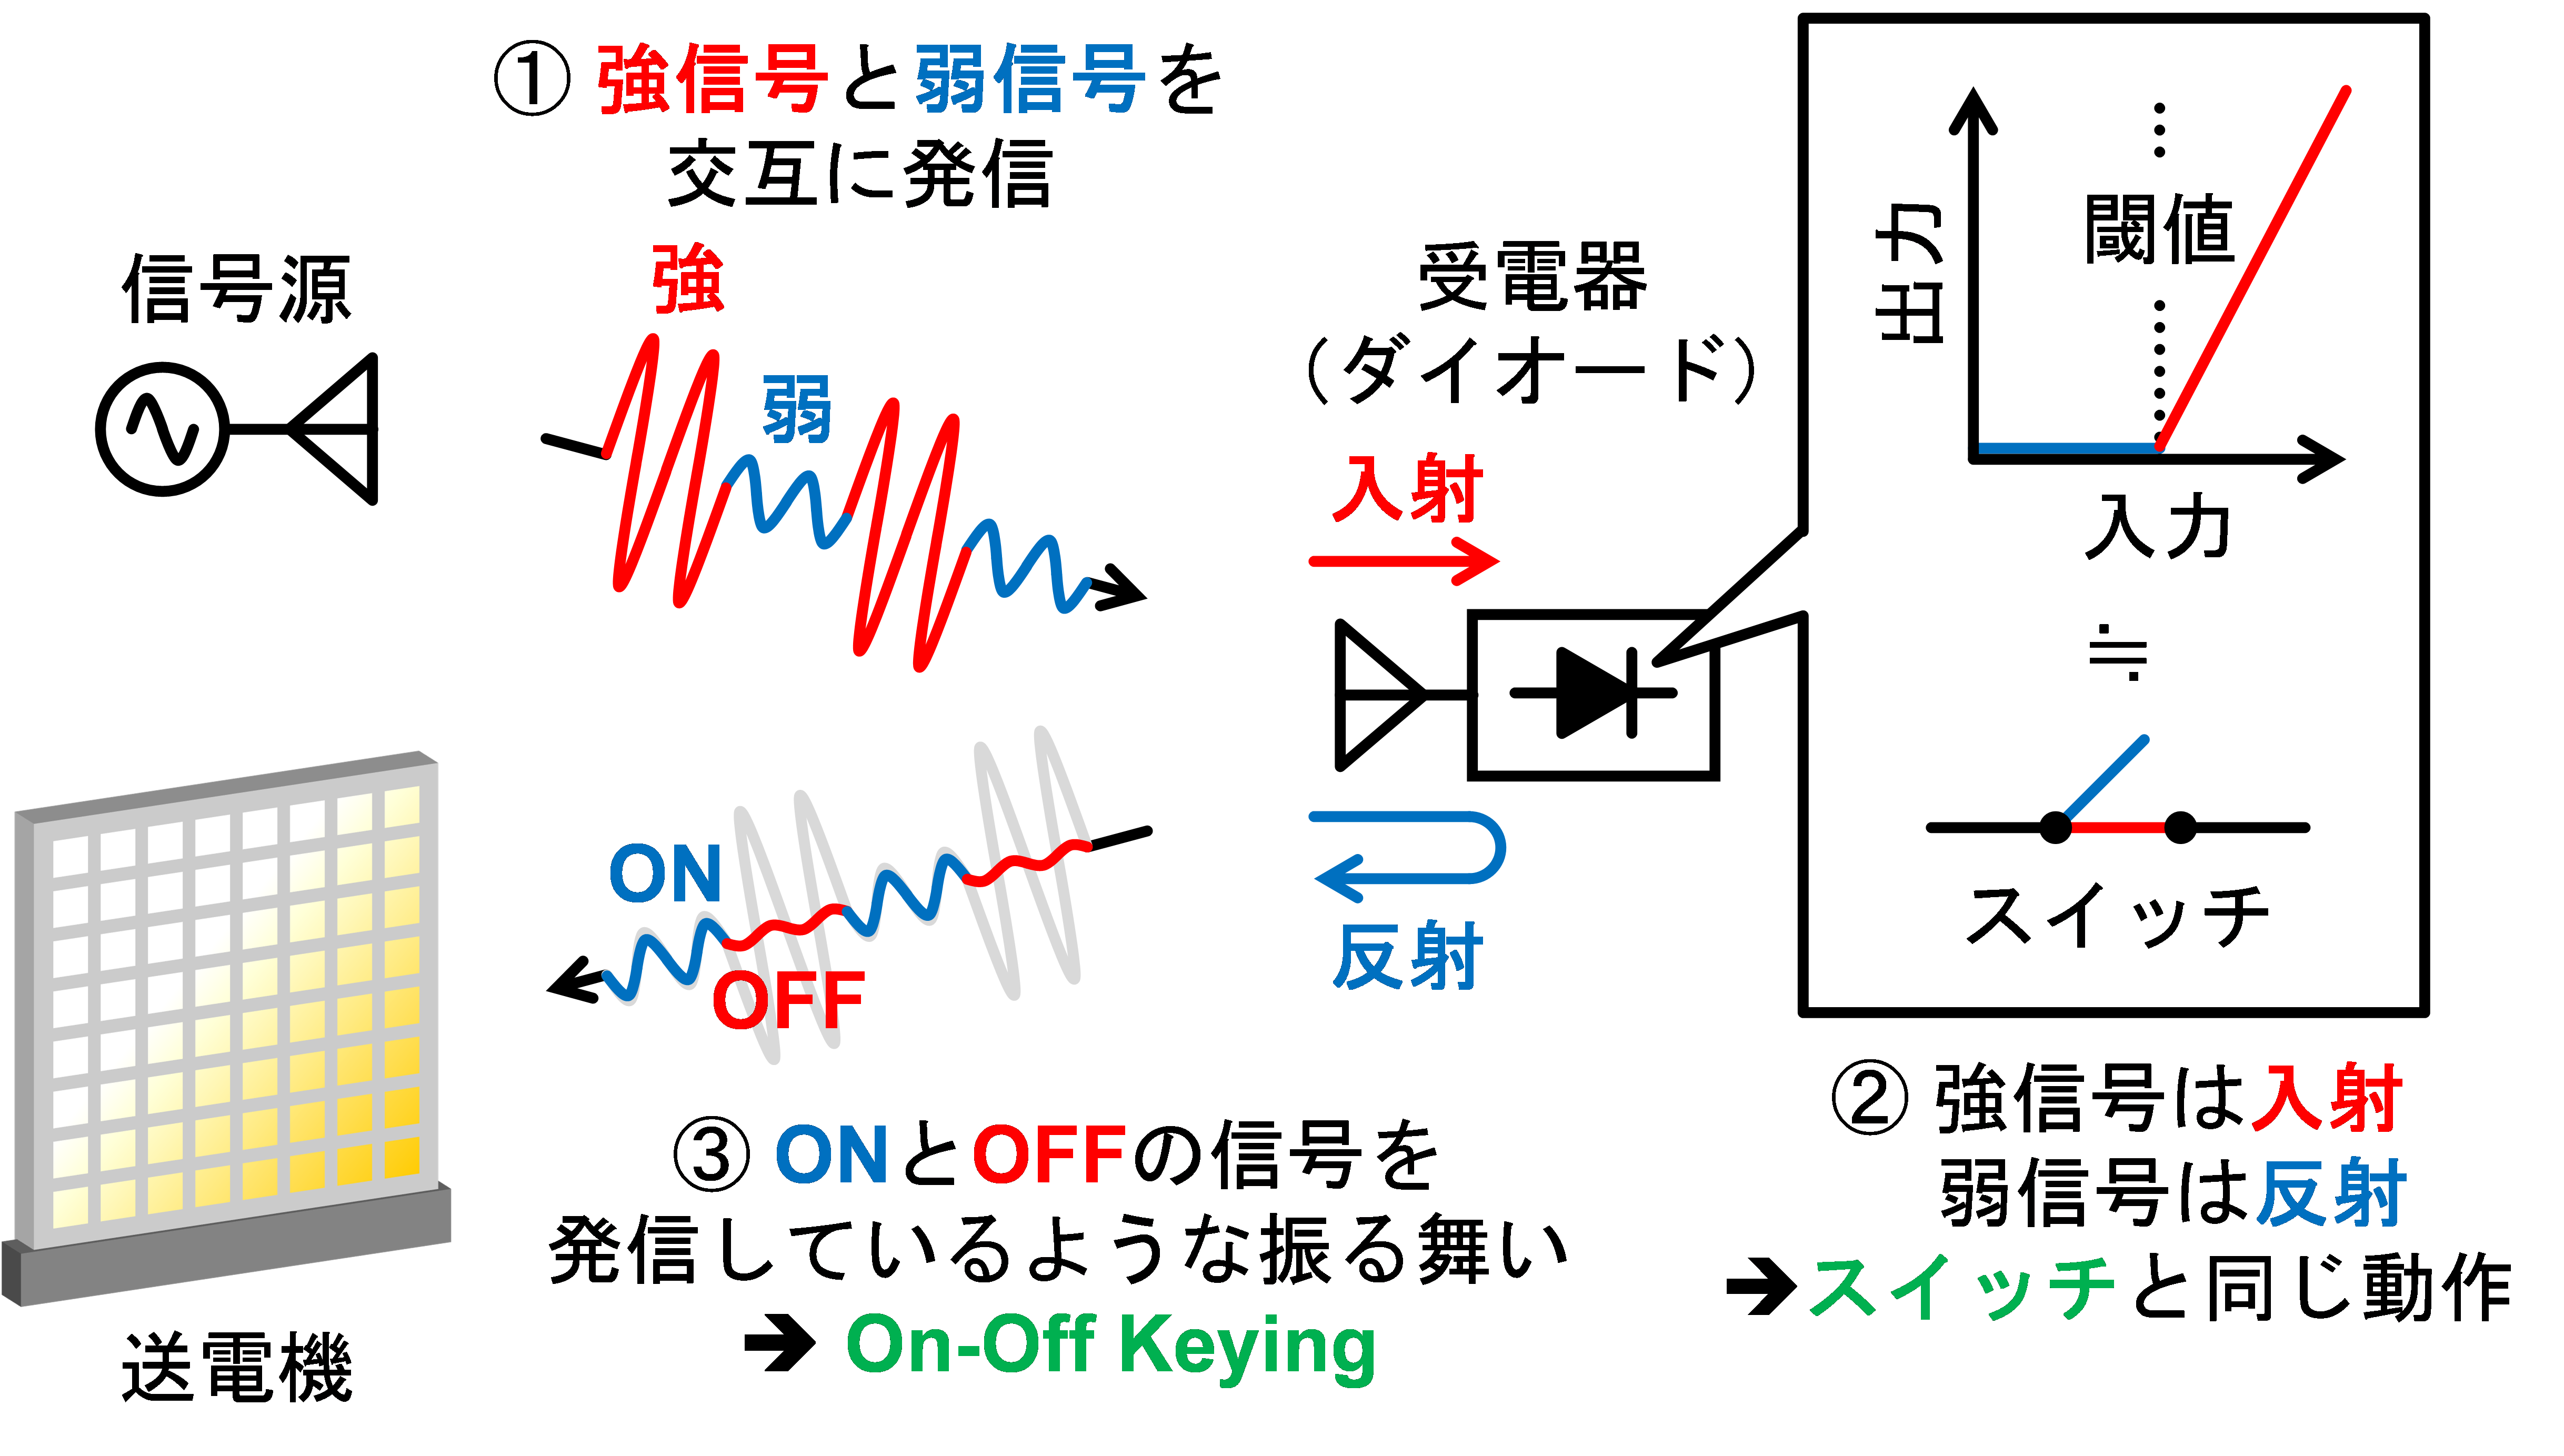 完全受動伝搬路推定法の原理 [1,2]：受電器において特別な装置や能動的な処理を必要とせずとも、送電機は受電器の位置を特定可能。